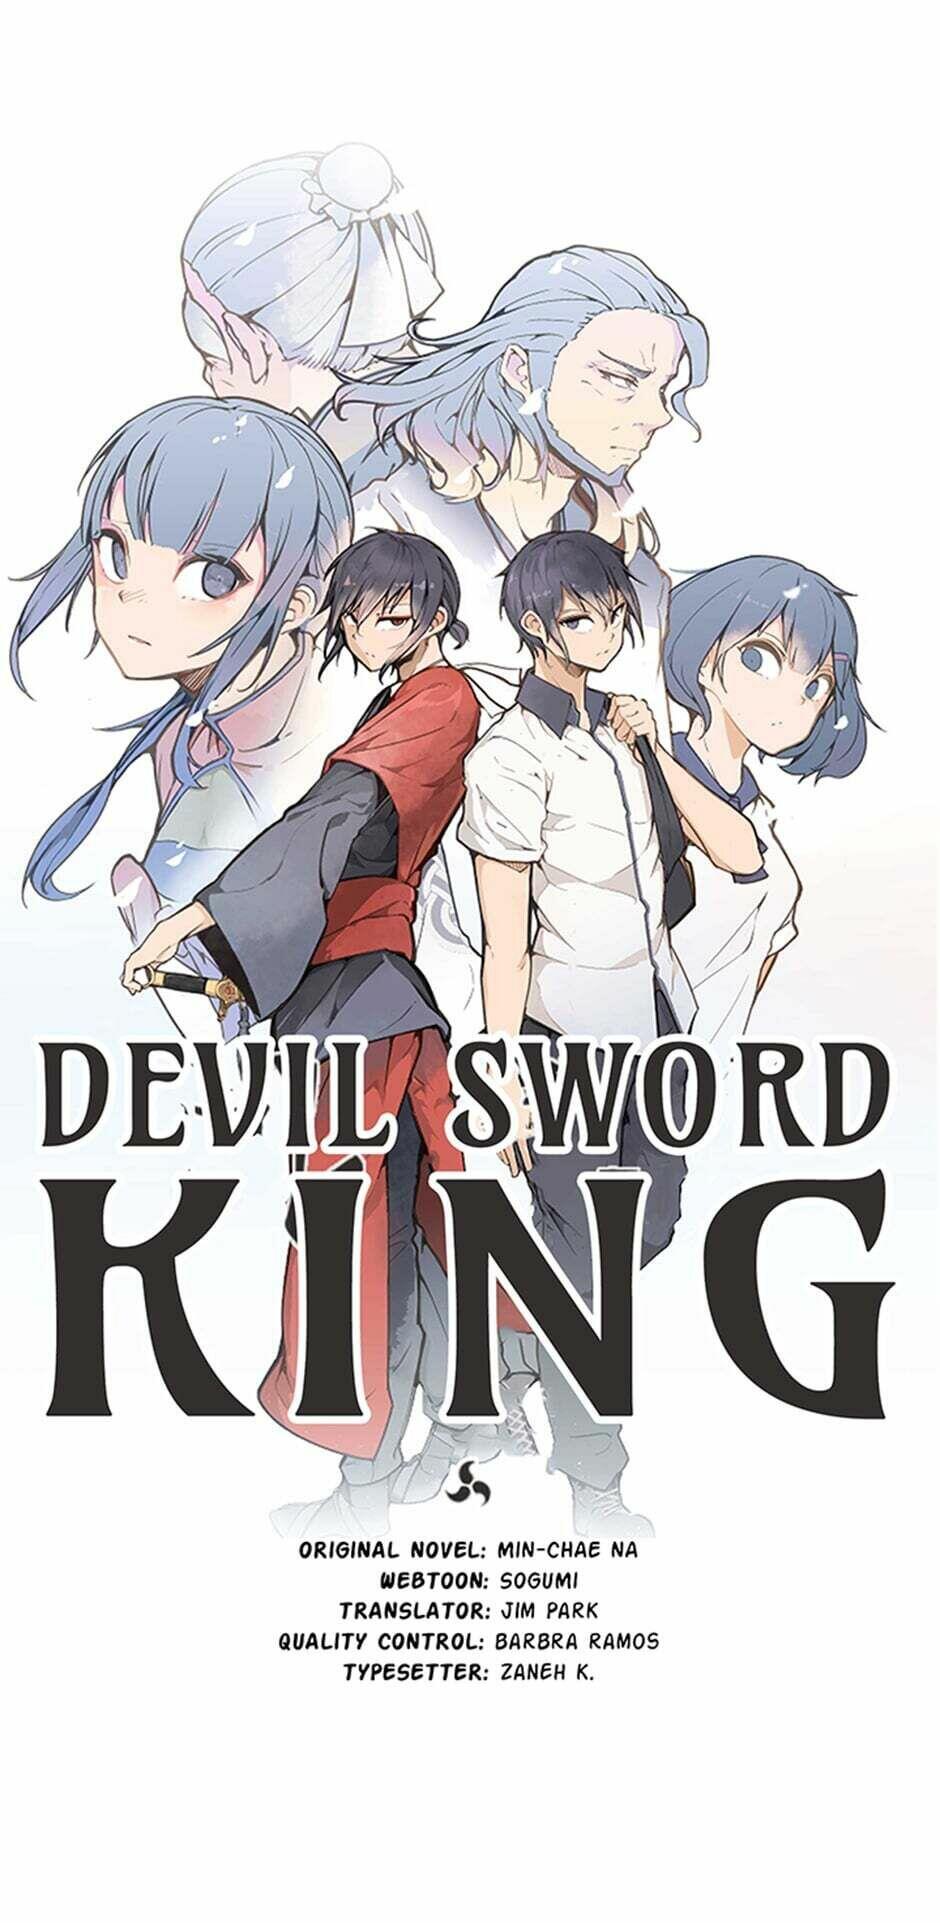 Devil sword king manga